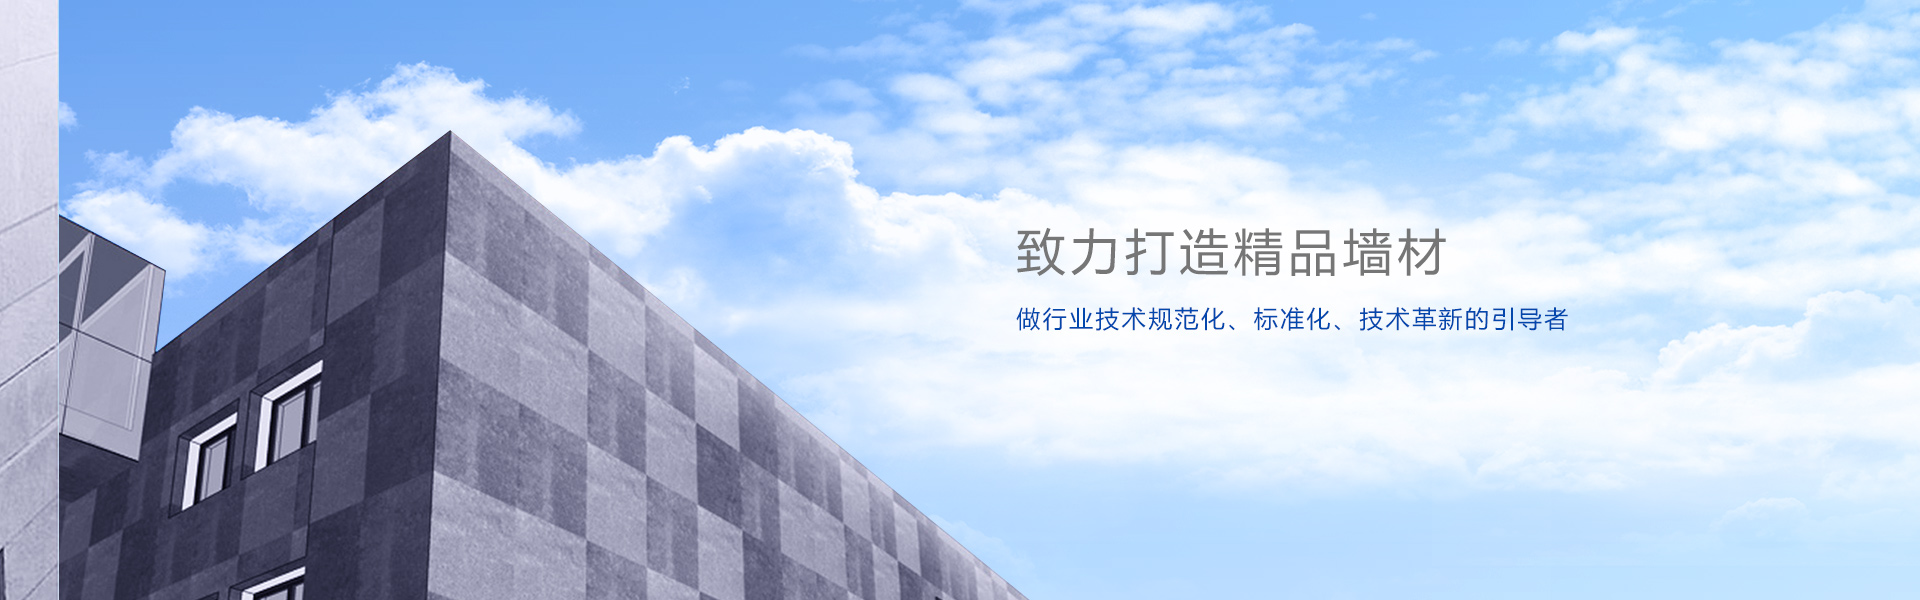 Z6尊龙·凯时(中国)-官方网站_image5134